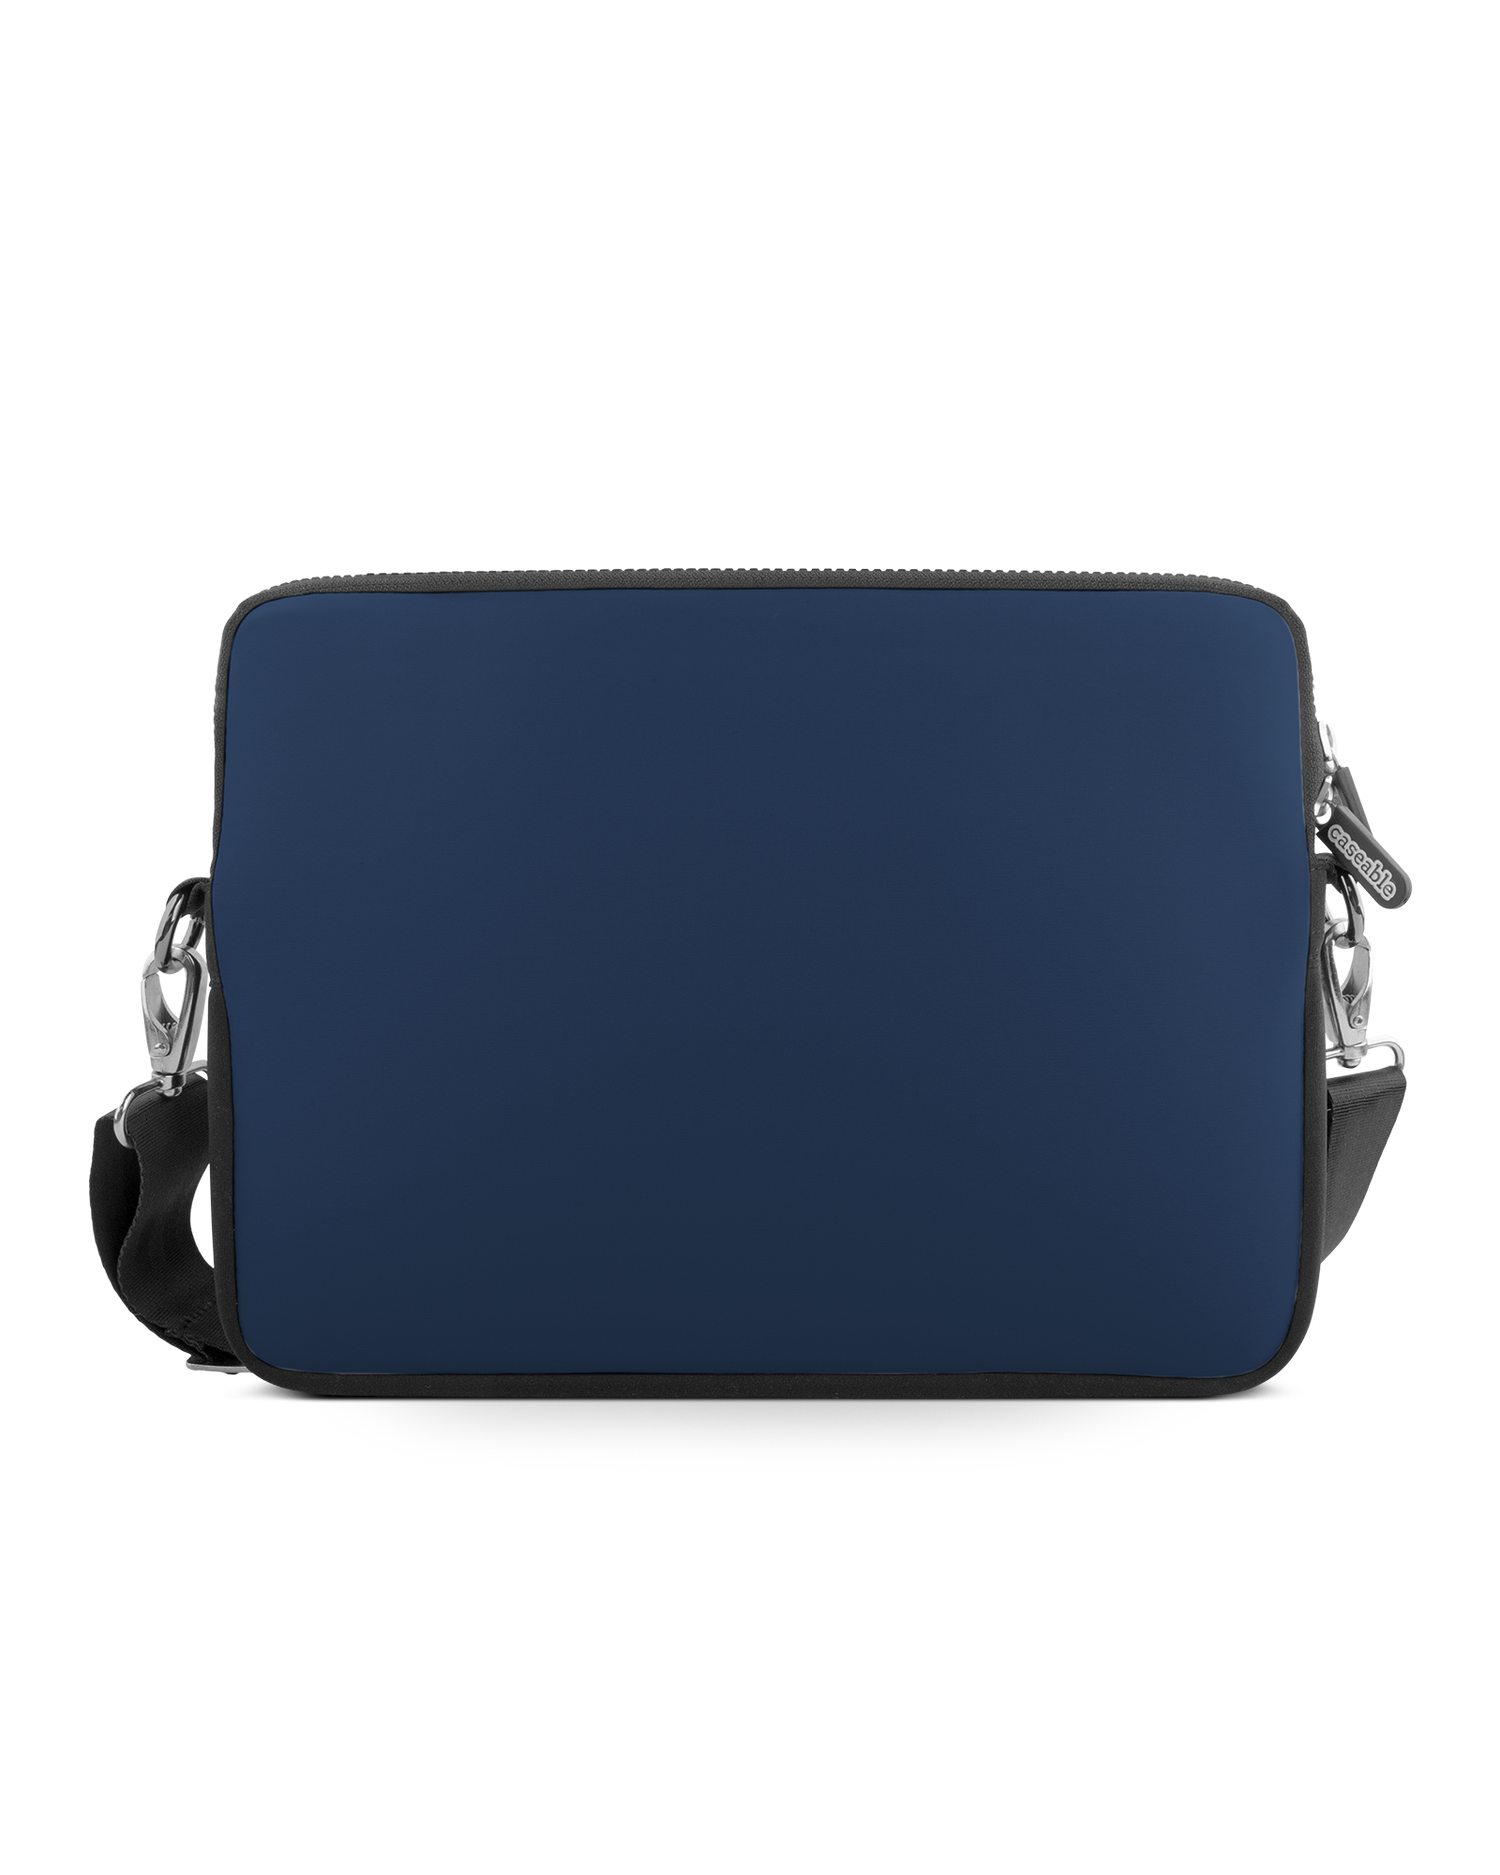 NAVY Premium Laptoptasche 17 Zoll: Vorderansicht